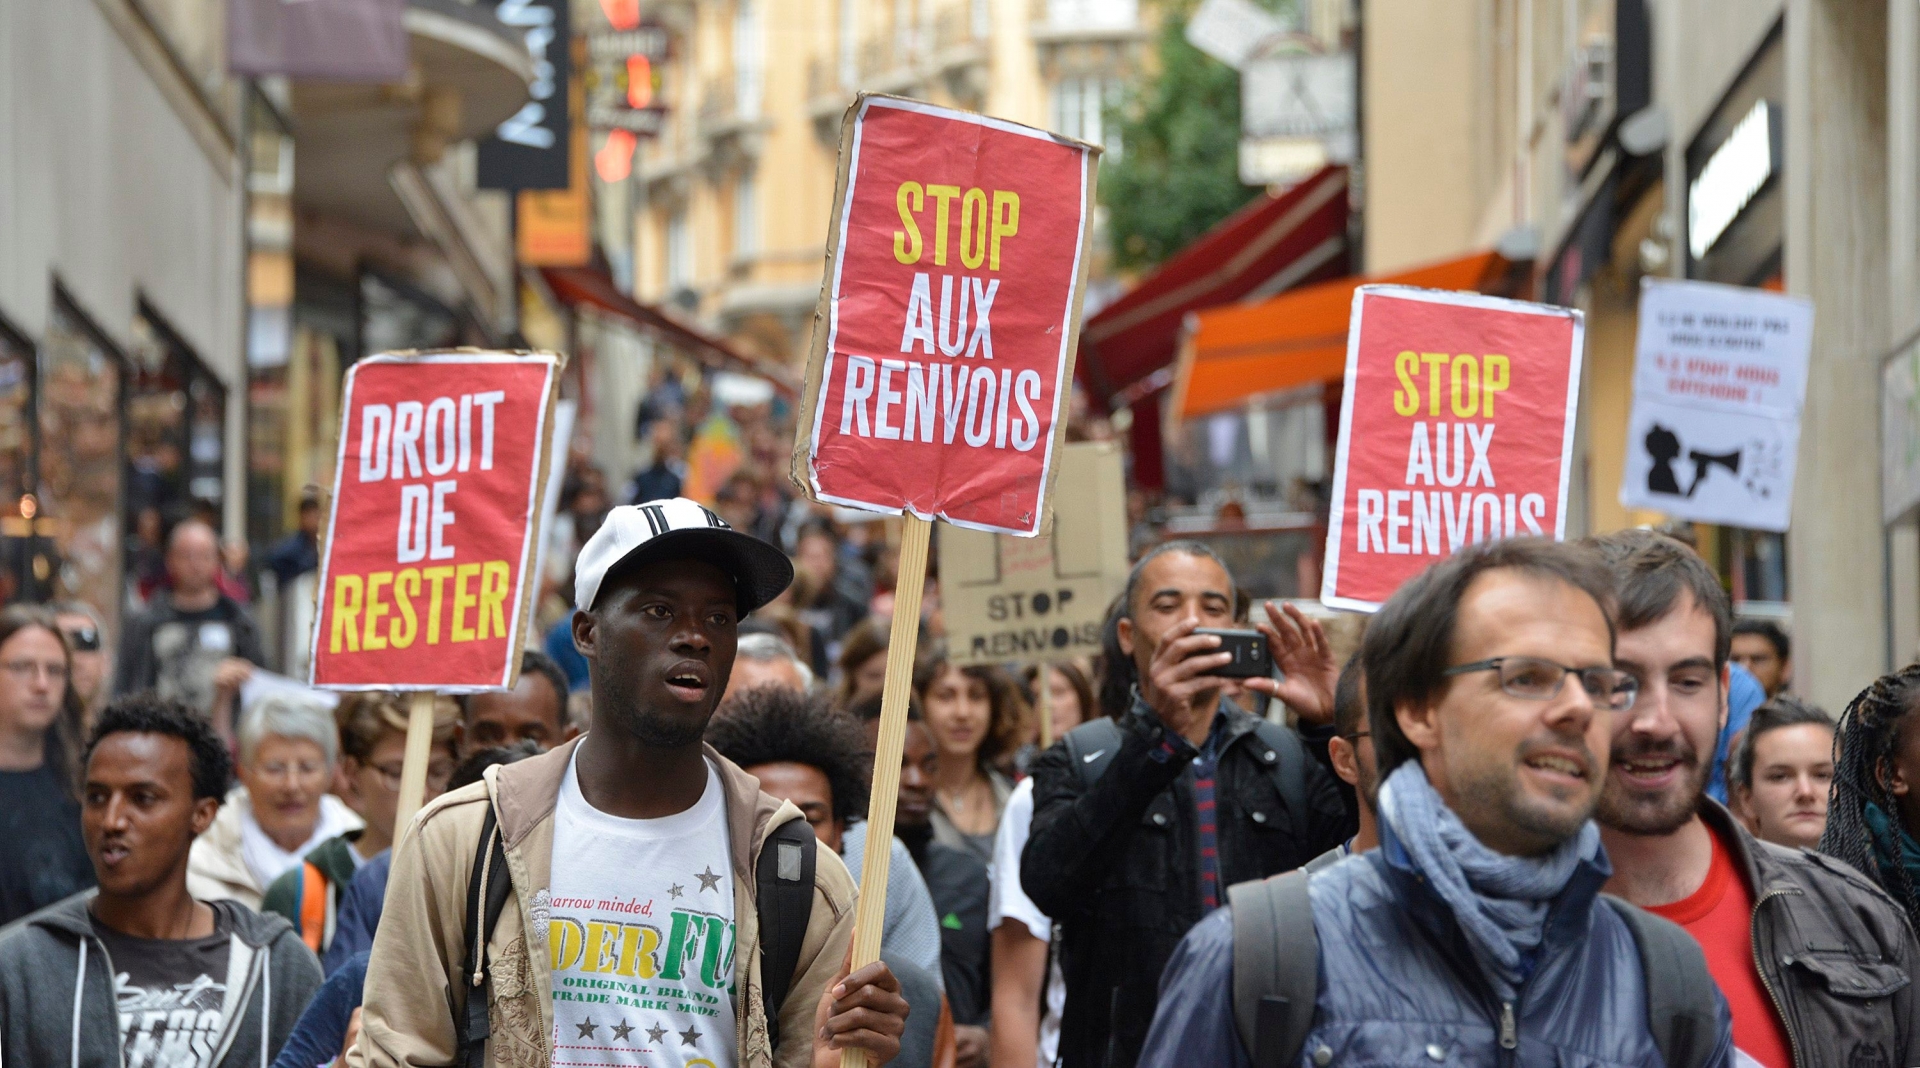 Des personnes manifestent contre les renvois Dublin des requerants d'asile lors d'une manifestation organise par le "Collectif R" ce mardi 15 septembre 2015 a Lausanne. Depuis 6 mois, cinq requerants d'asile erythreens et ethiopiens sont refugies dans le sous-sol de l'eglise Saint-Laurent a Lausanne. (KEYSTONE/Christian Brun) SCHWEIZ ASYLPOLITIK PROTEST DUBLIN ABKOMMEN